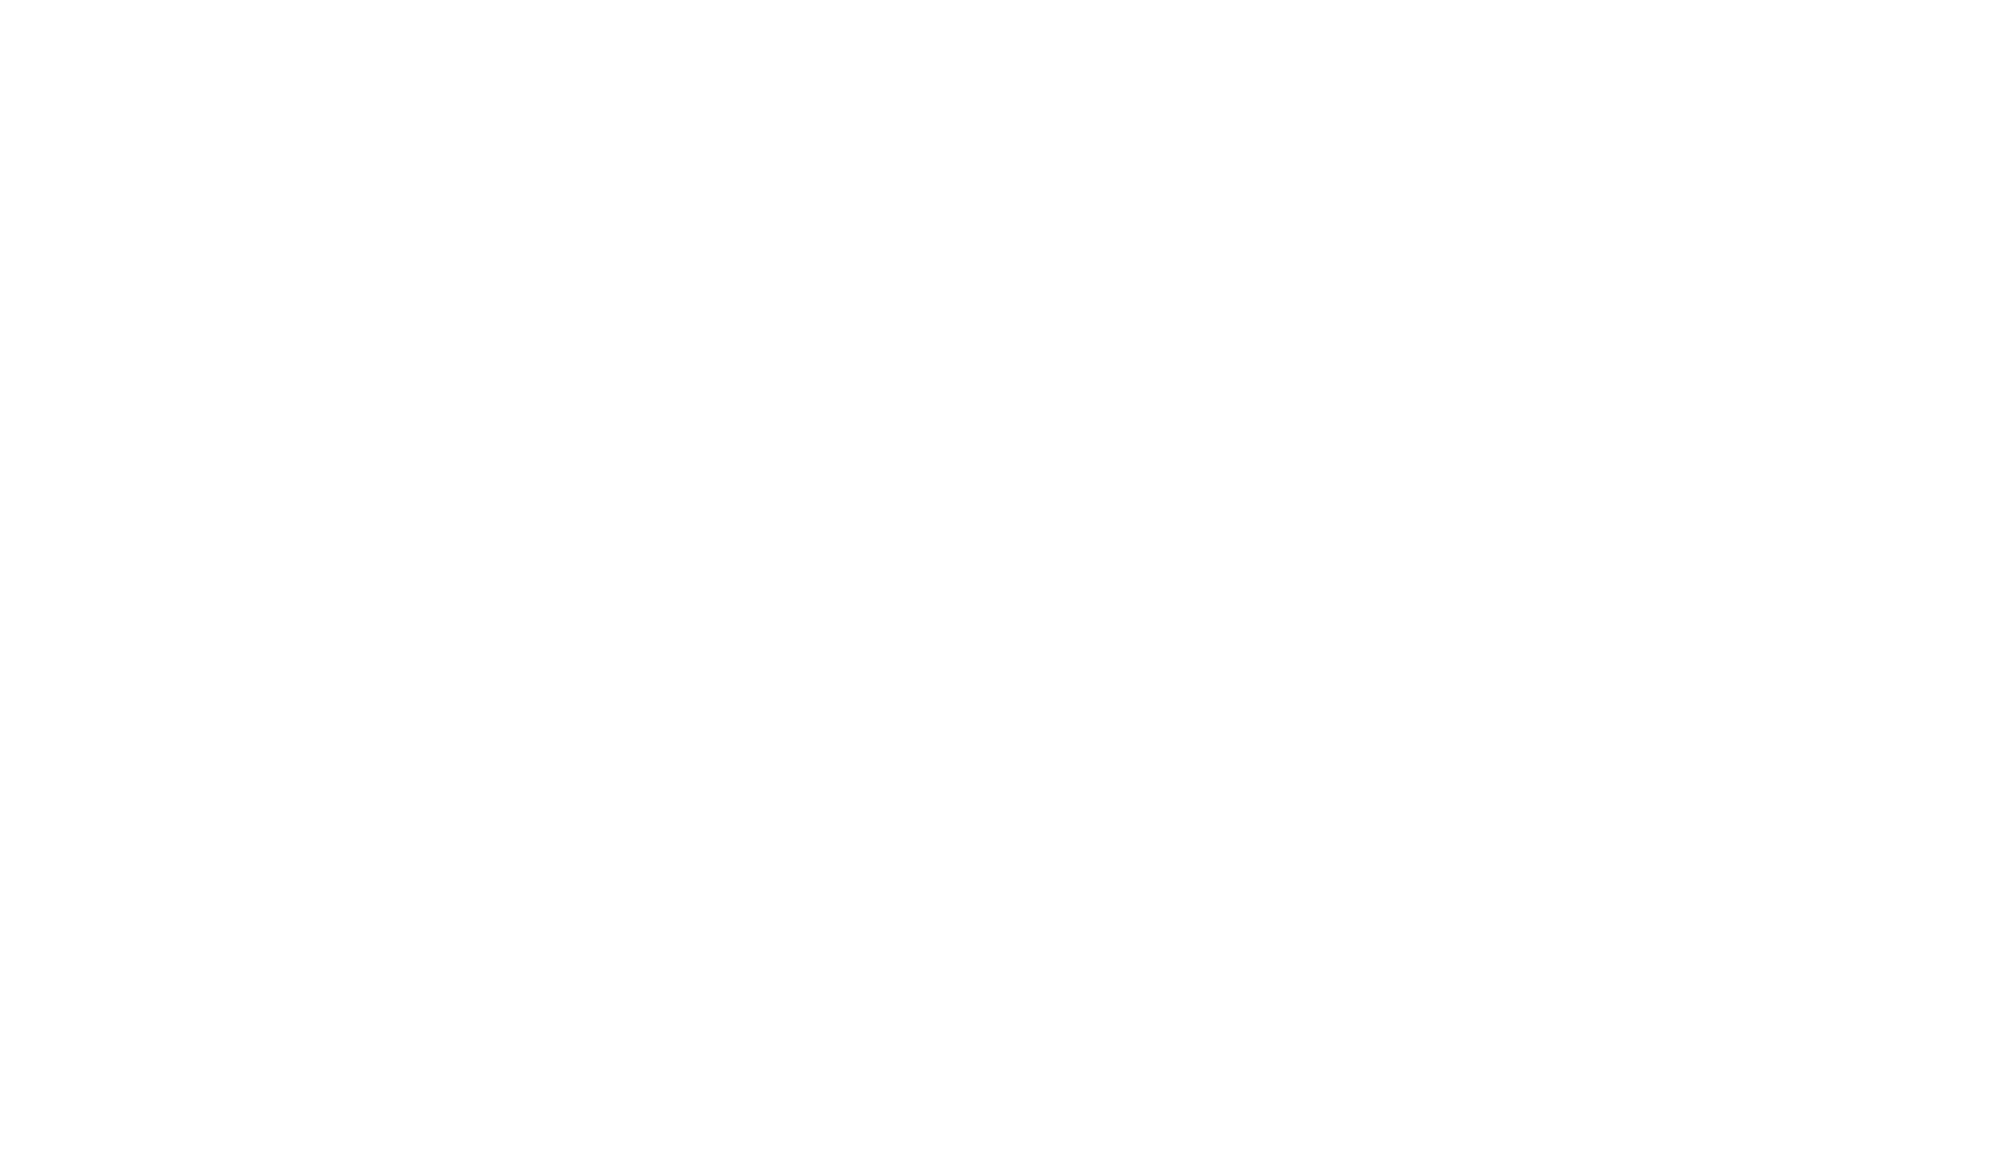 Private Sky Aviation